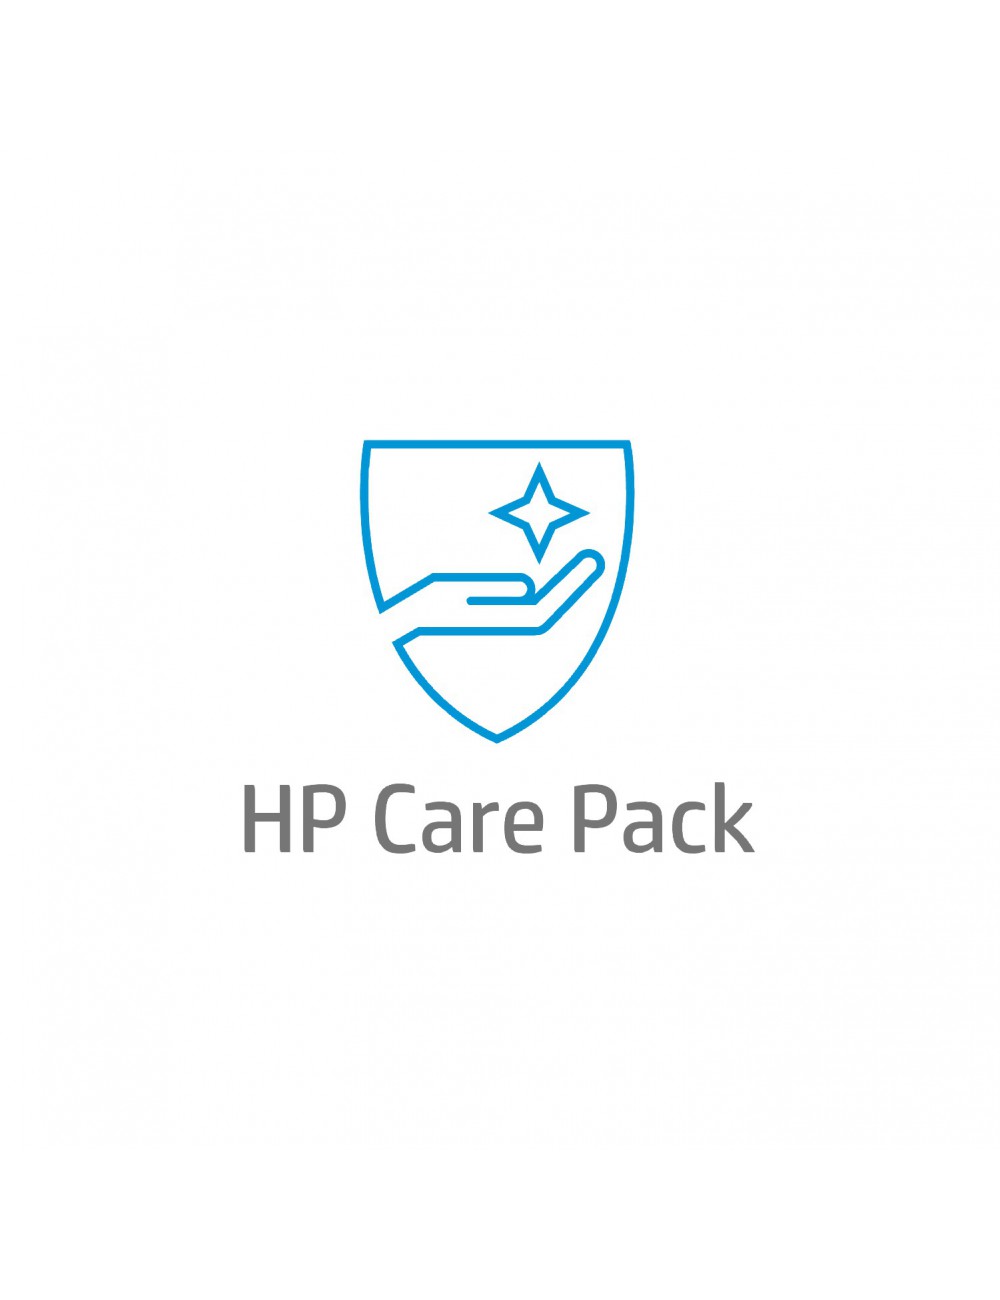 HP Care Pack, 2 ans, avec échange le jour ouvré suivant, pour imprimantes Officejet Pro